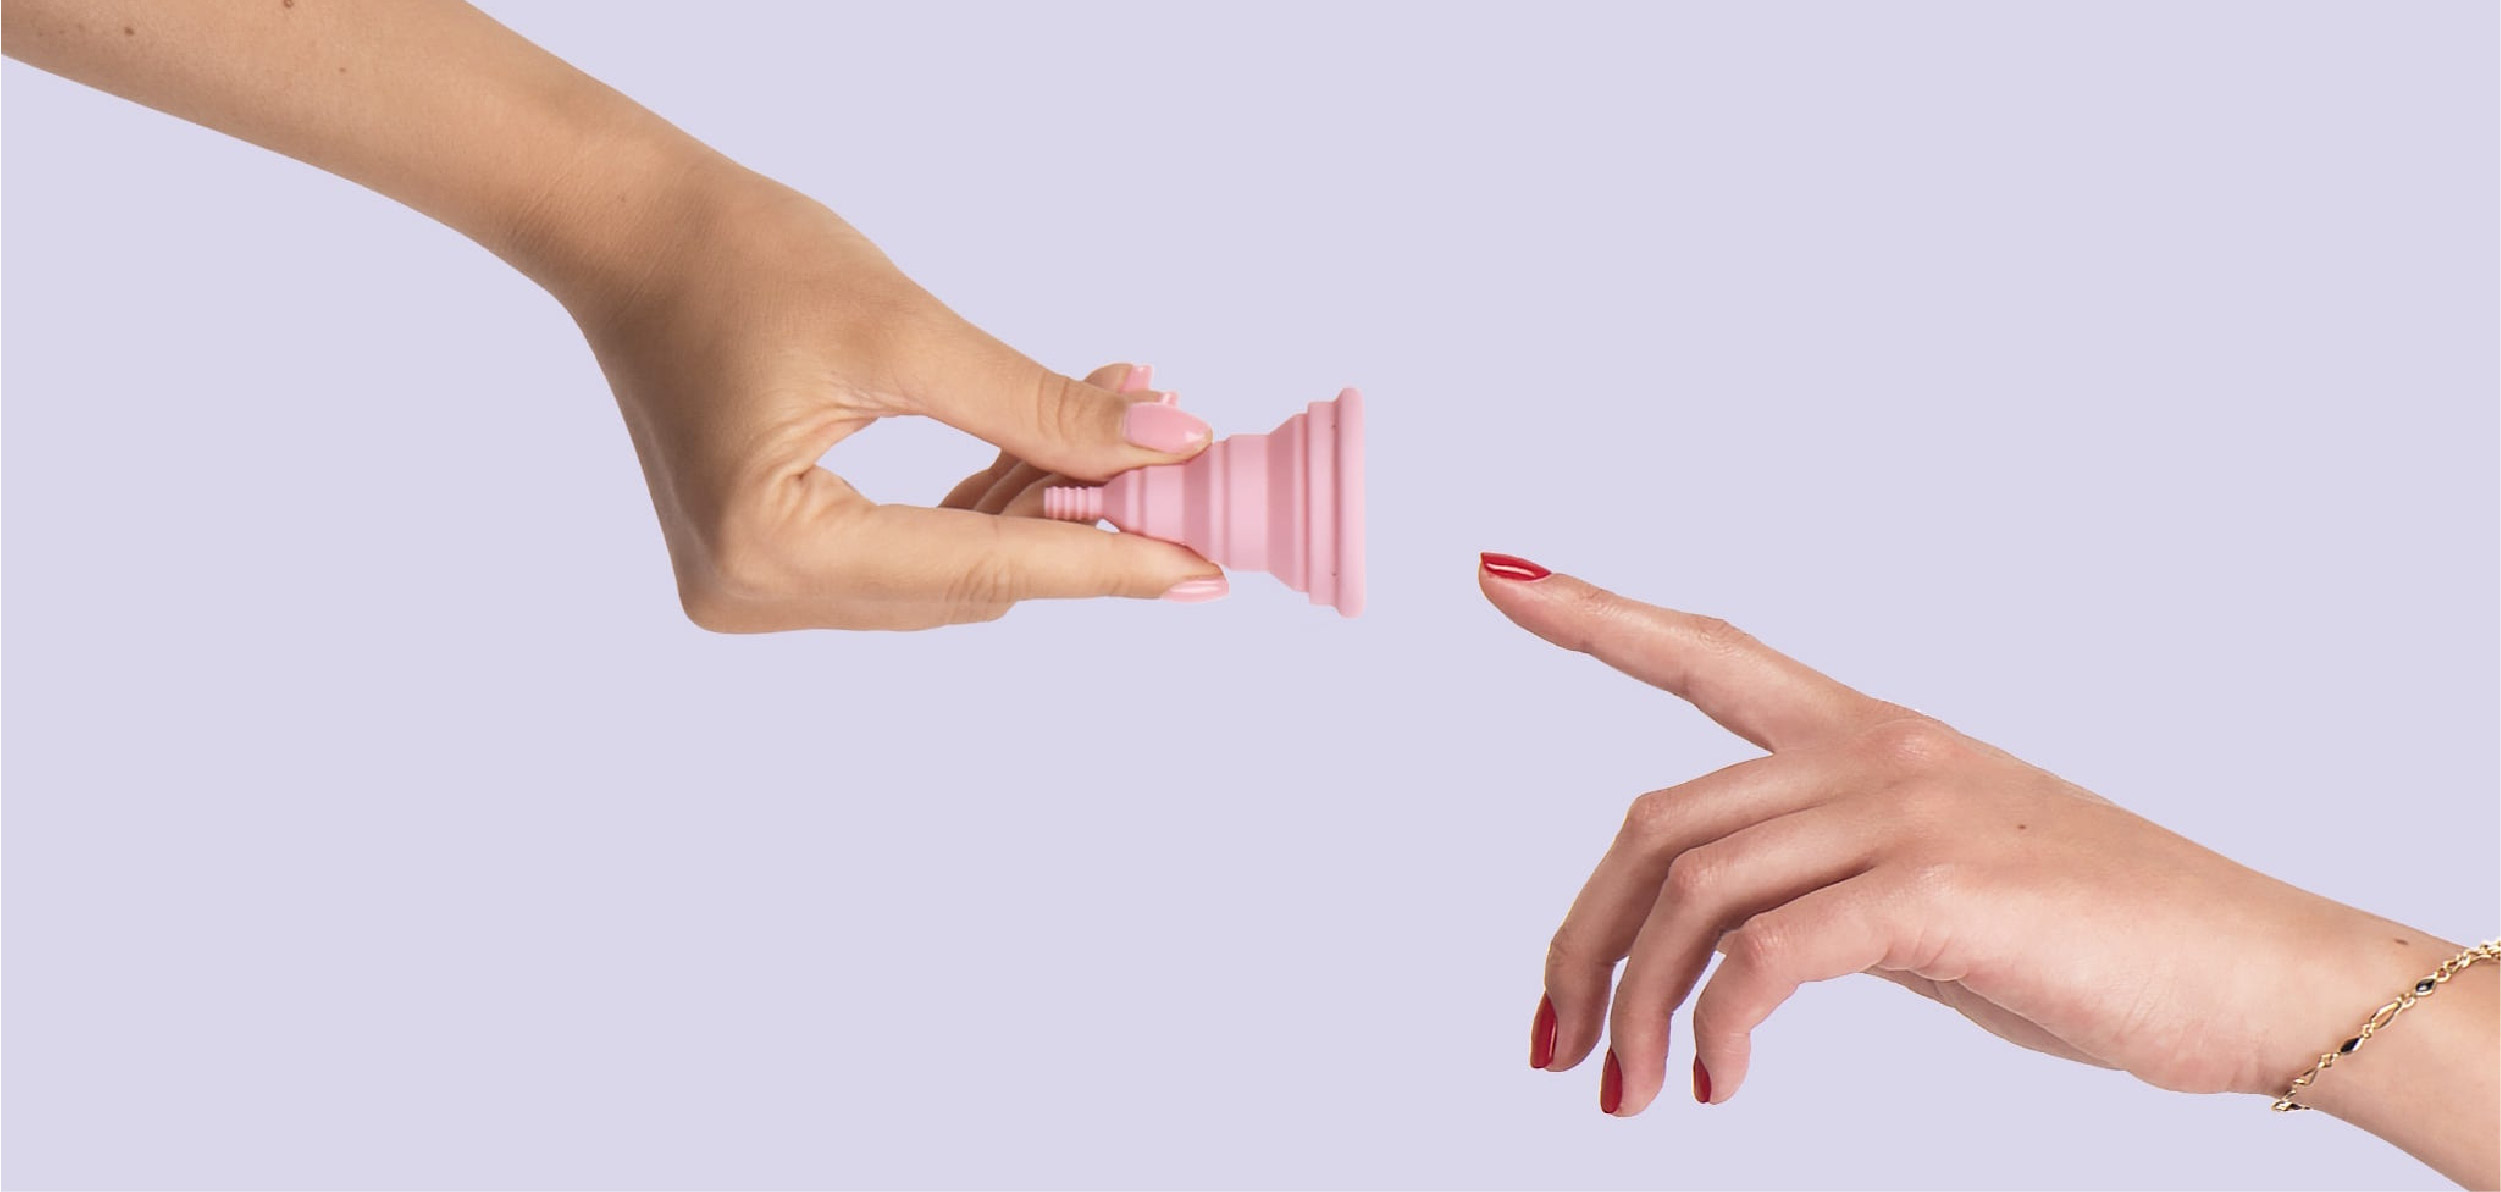 Memahami Fungsi Menstrual Cup, Pengganti Pembalut dan Tampon 